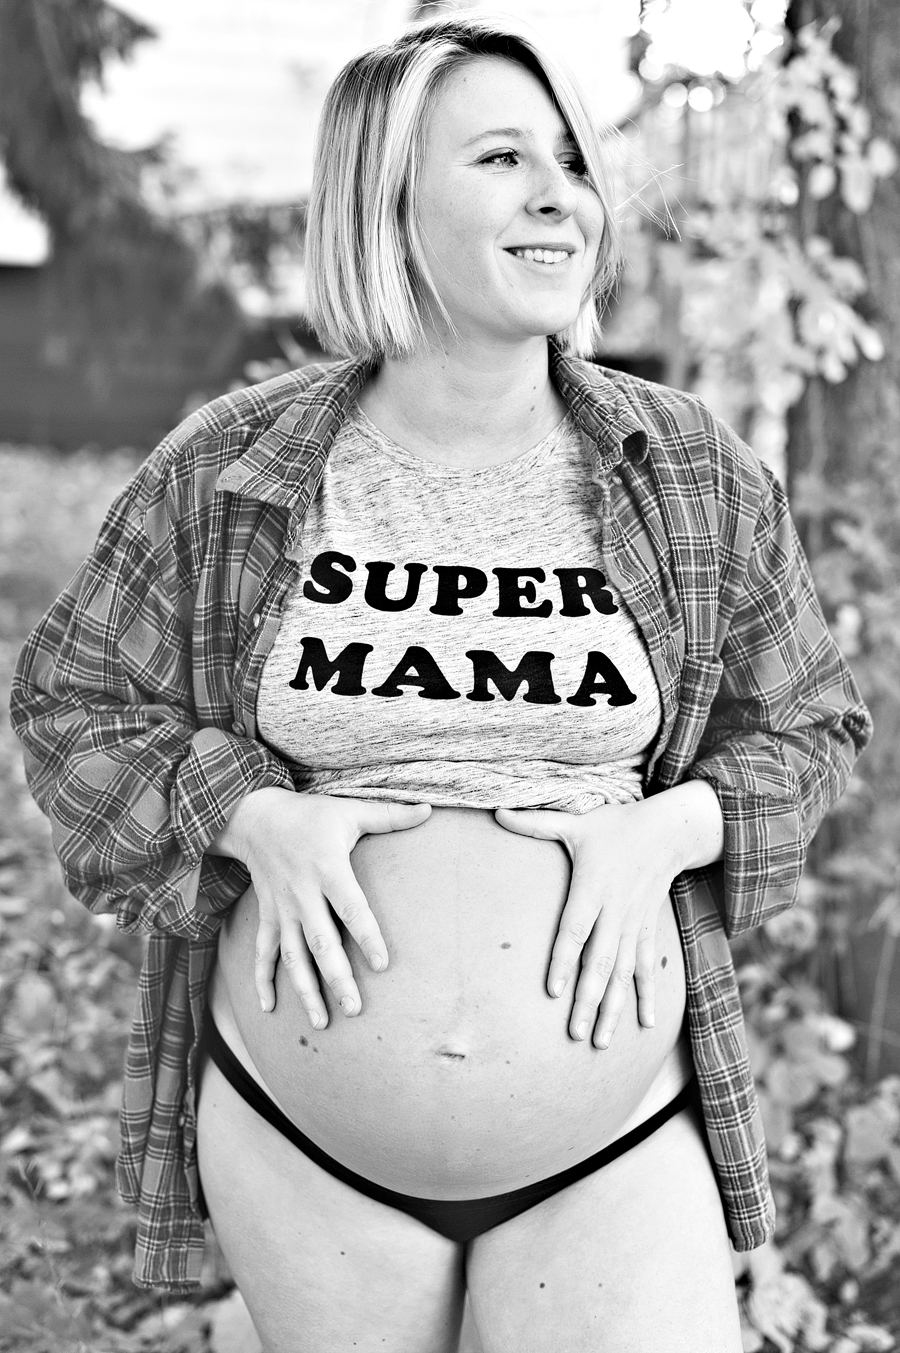 saco, maine maternity photos